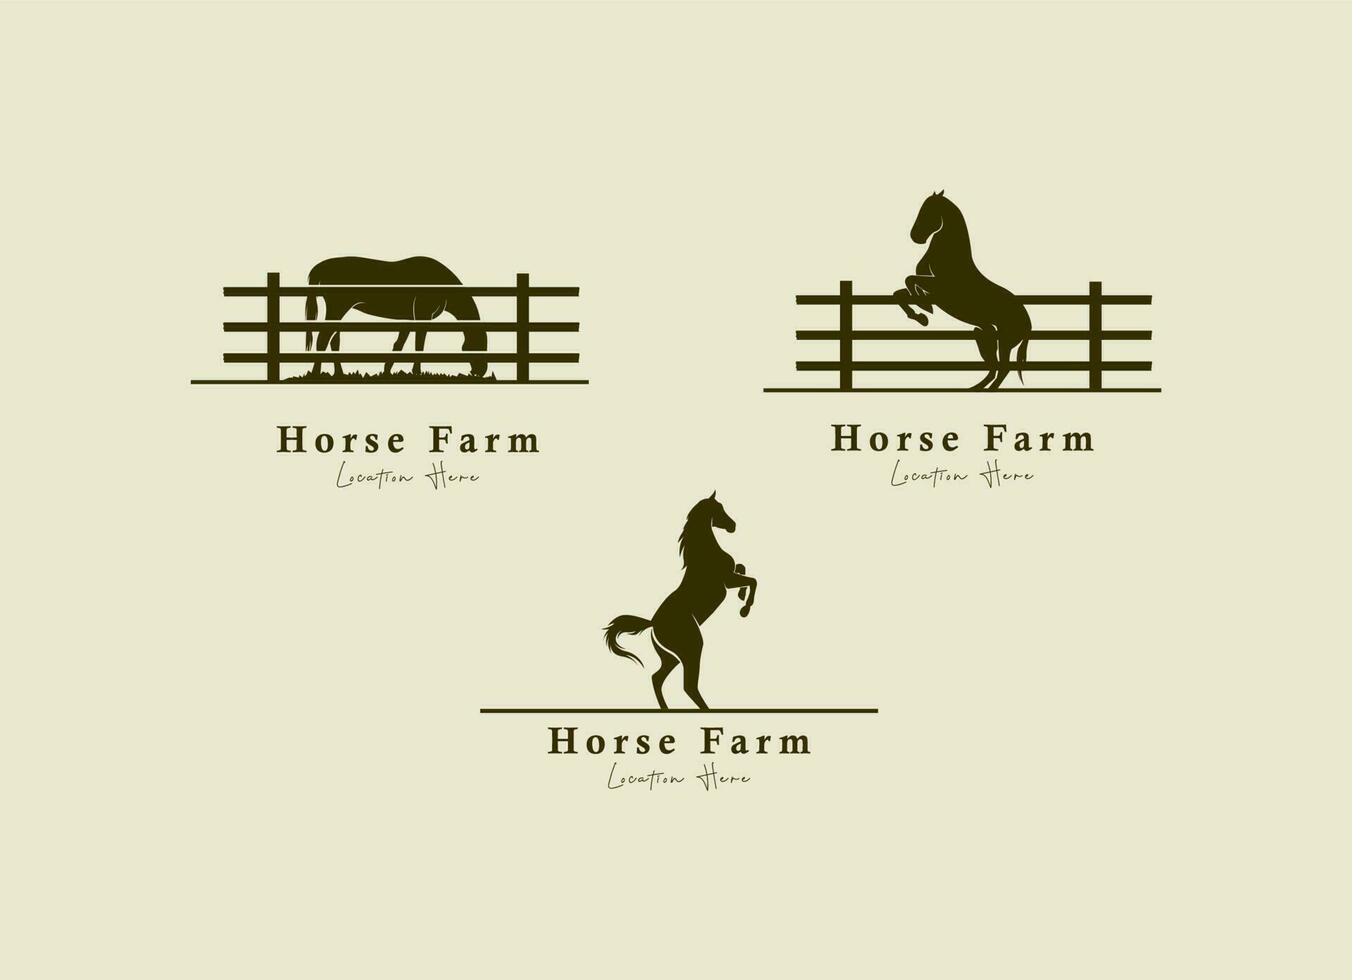 silhouette de cheval derrière un enclos de clôture en bois pour la campagne rustique rétro vintage western country farm ranch logo design vecteur